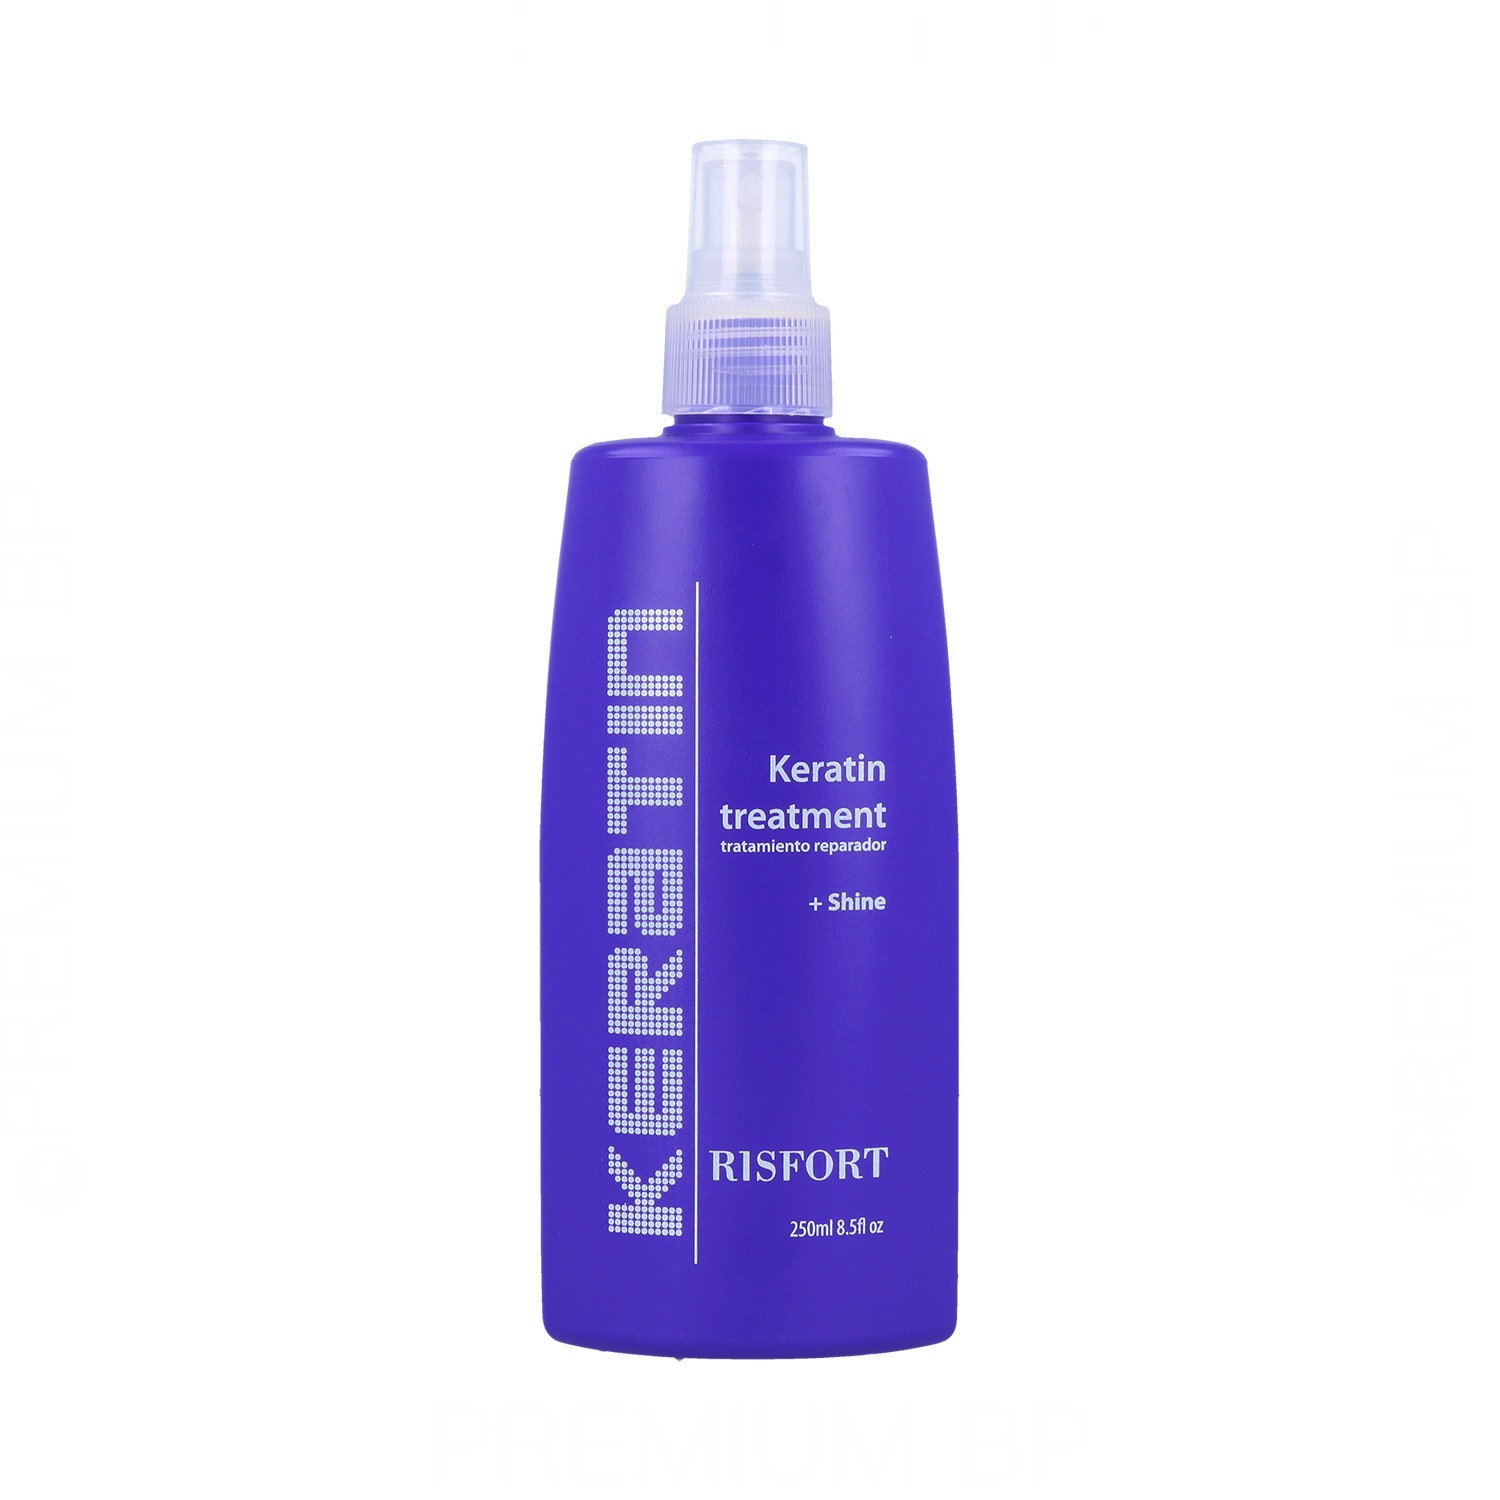 Risfort - Risfort keratin tratamiento spray 250 ml, tratamiento reparador de keratina líquida en spray que reconstruye la estructura capilar desde el interior del cabello. su fórmula contiene keratina líquida e hidrolizado de